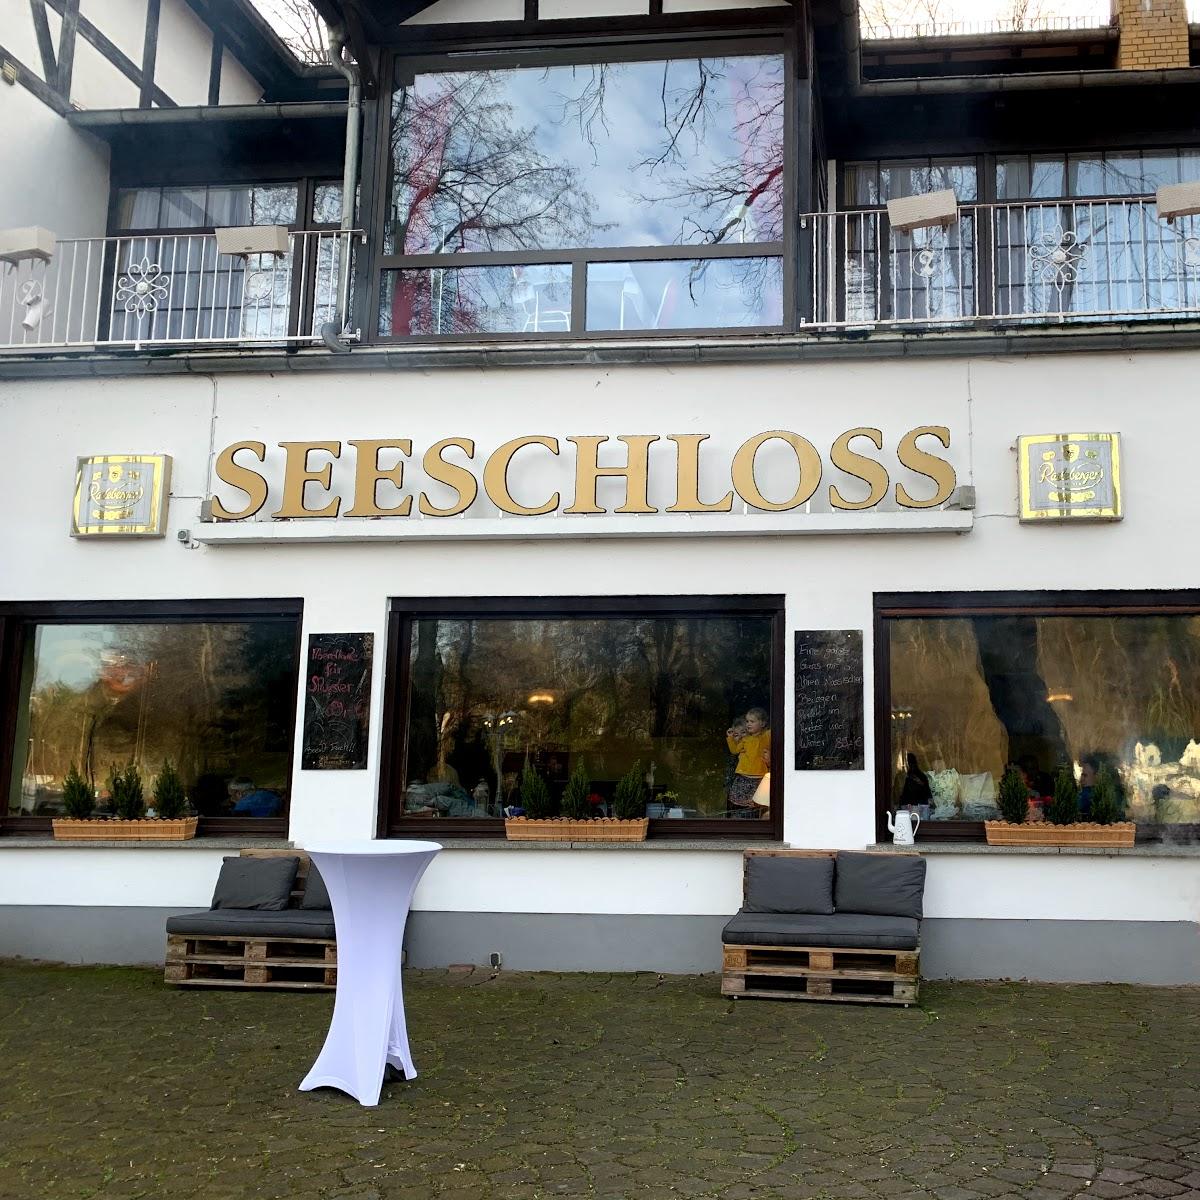 Restaurant "Seeschloß Lanke" in Wandlitz